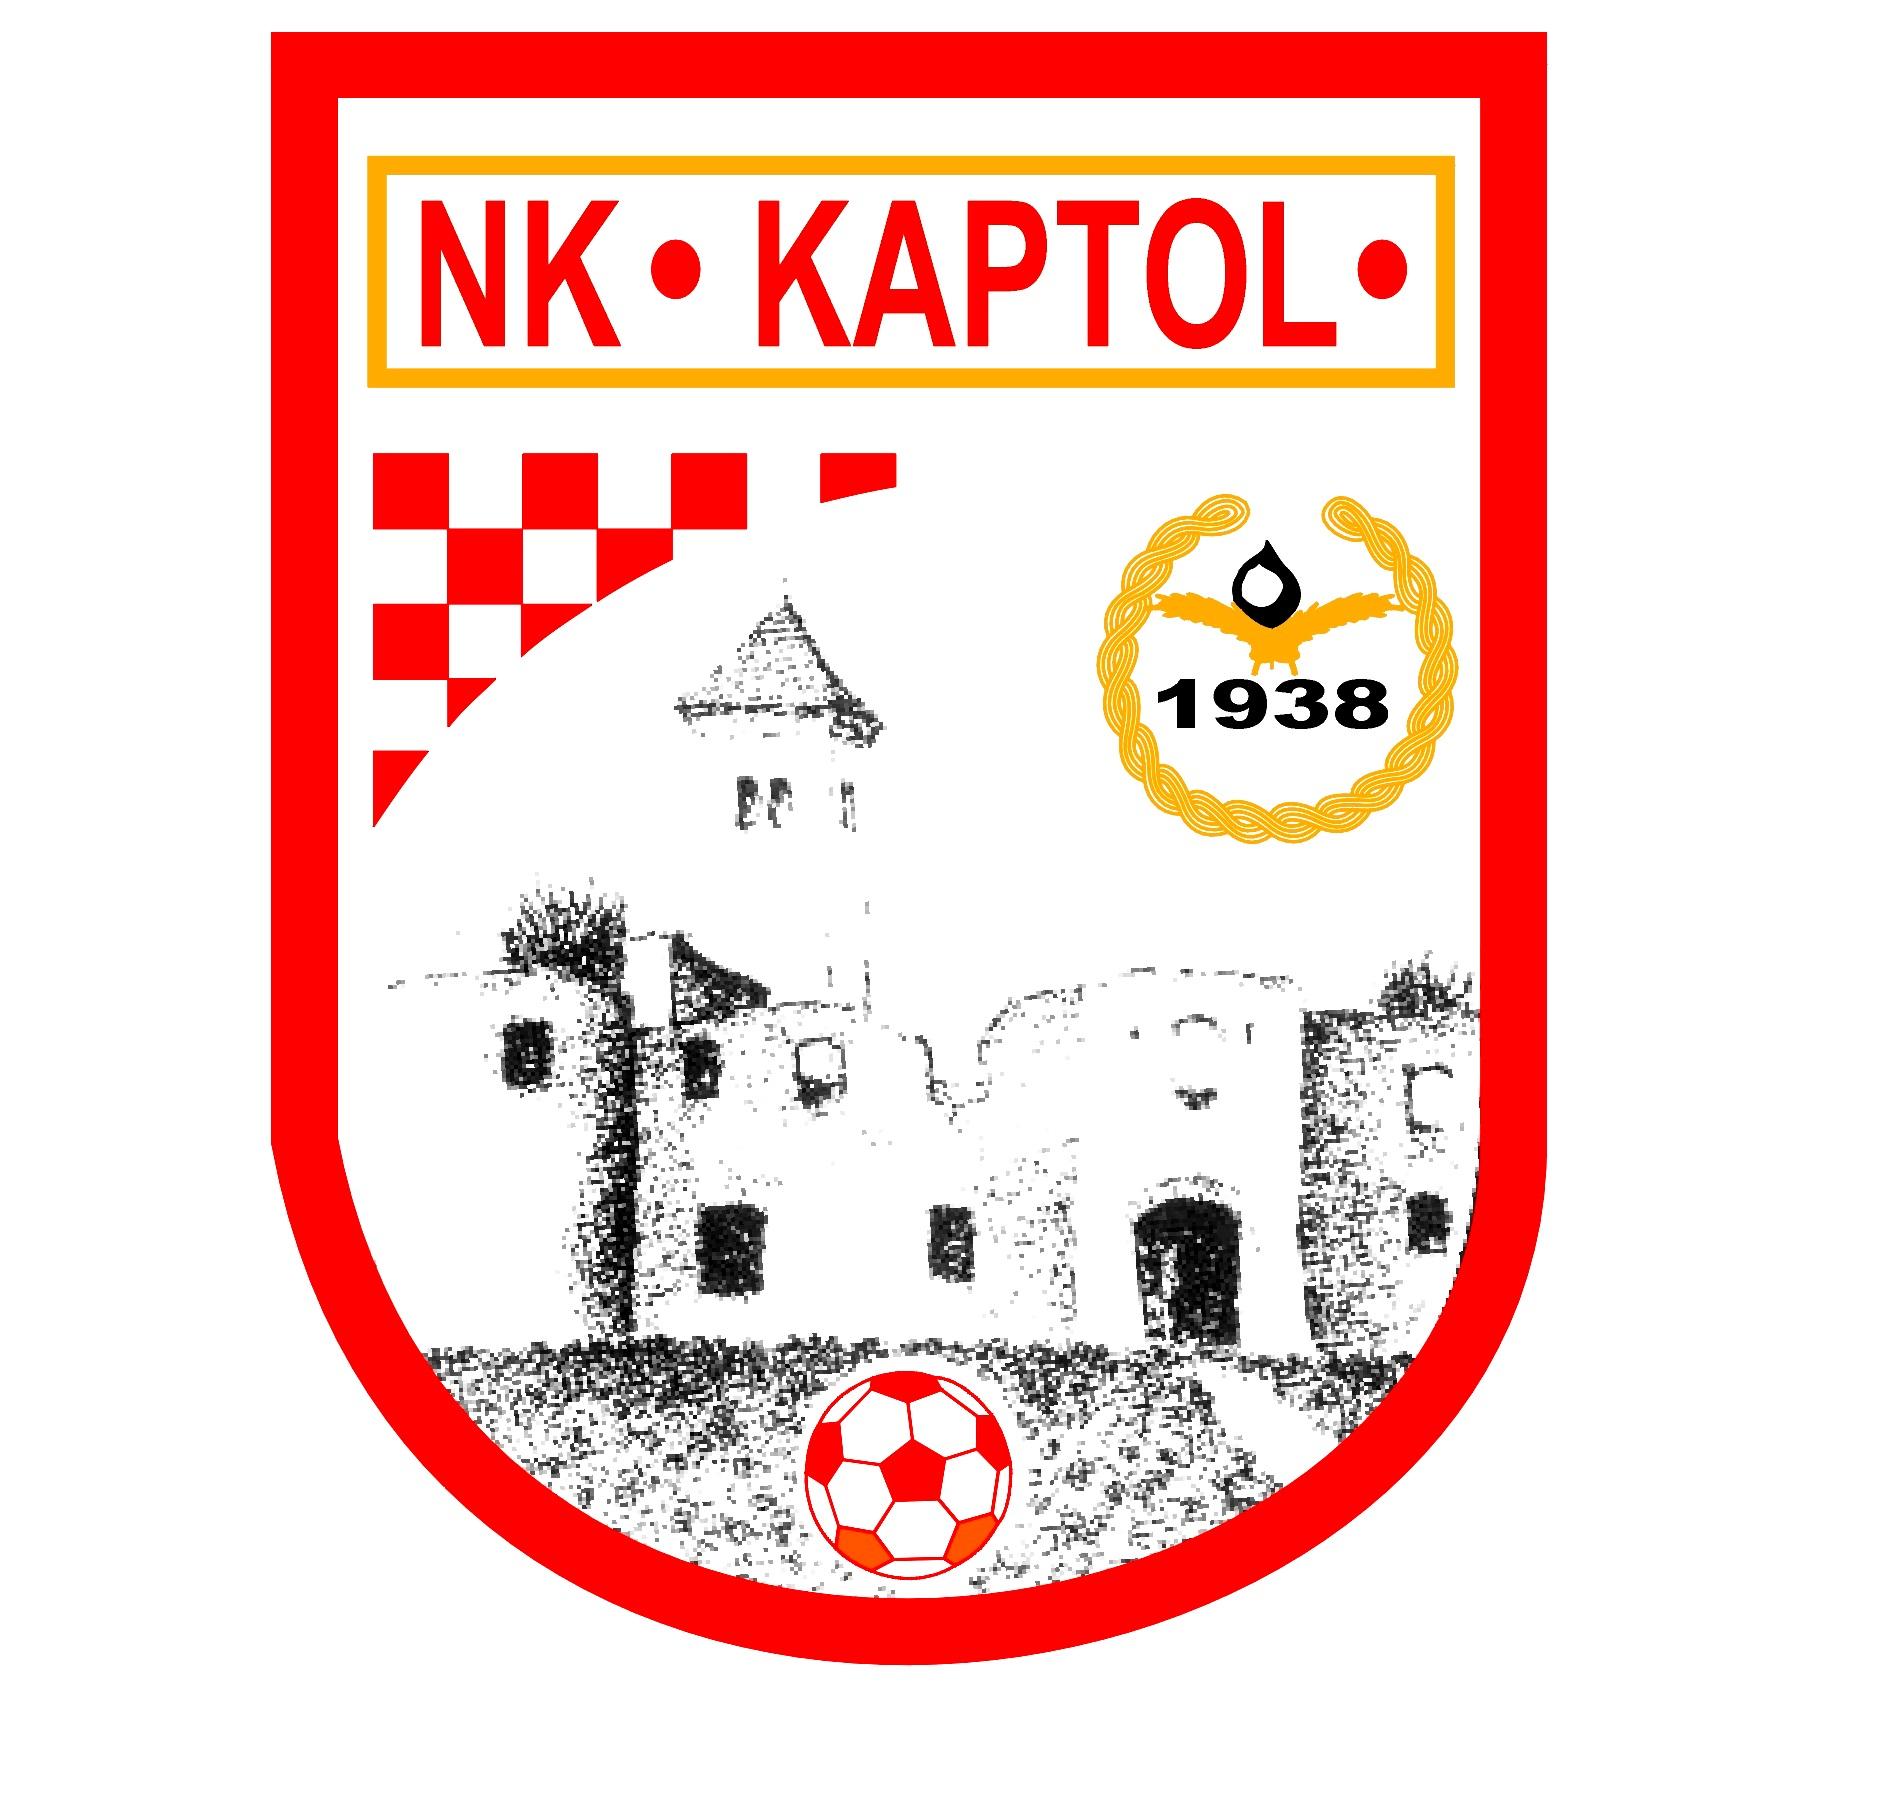 Raspored natjecanja NK Kaptol sezona 19./20.